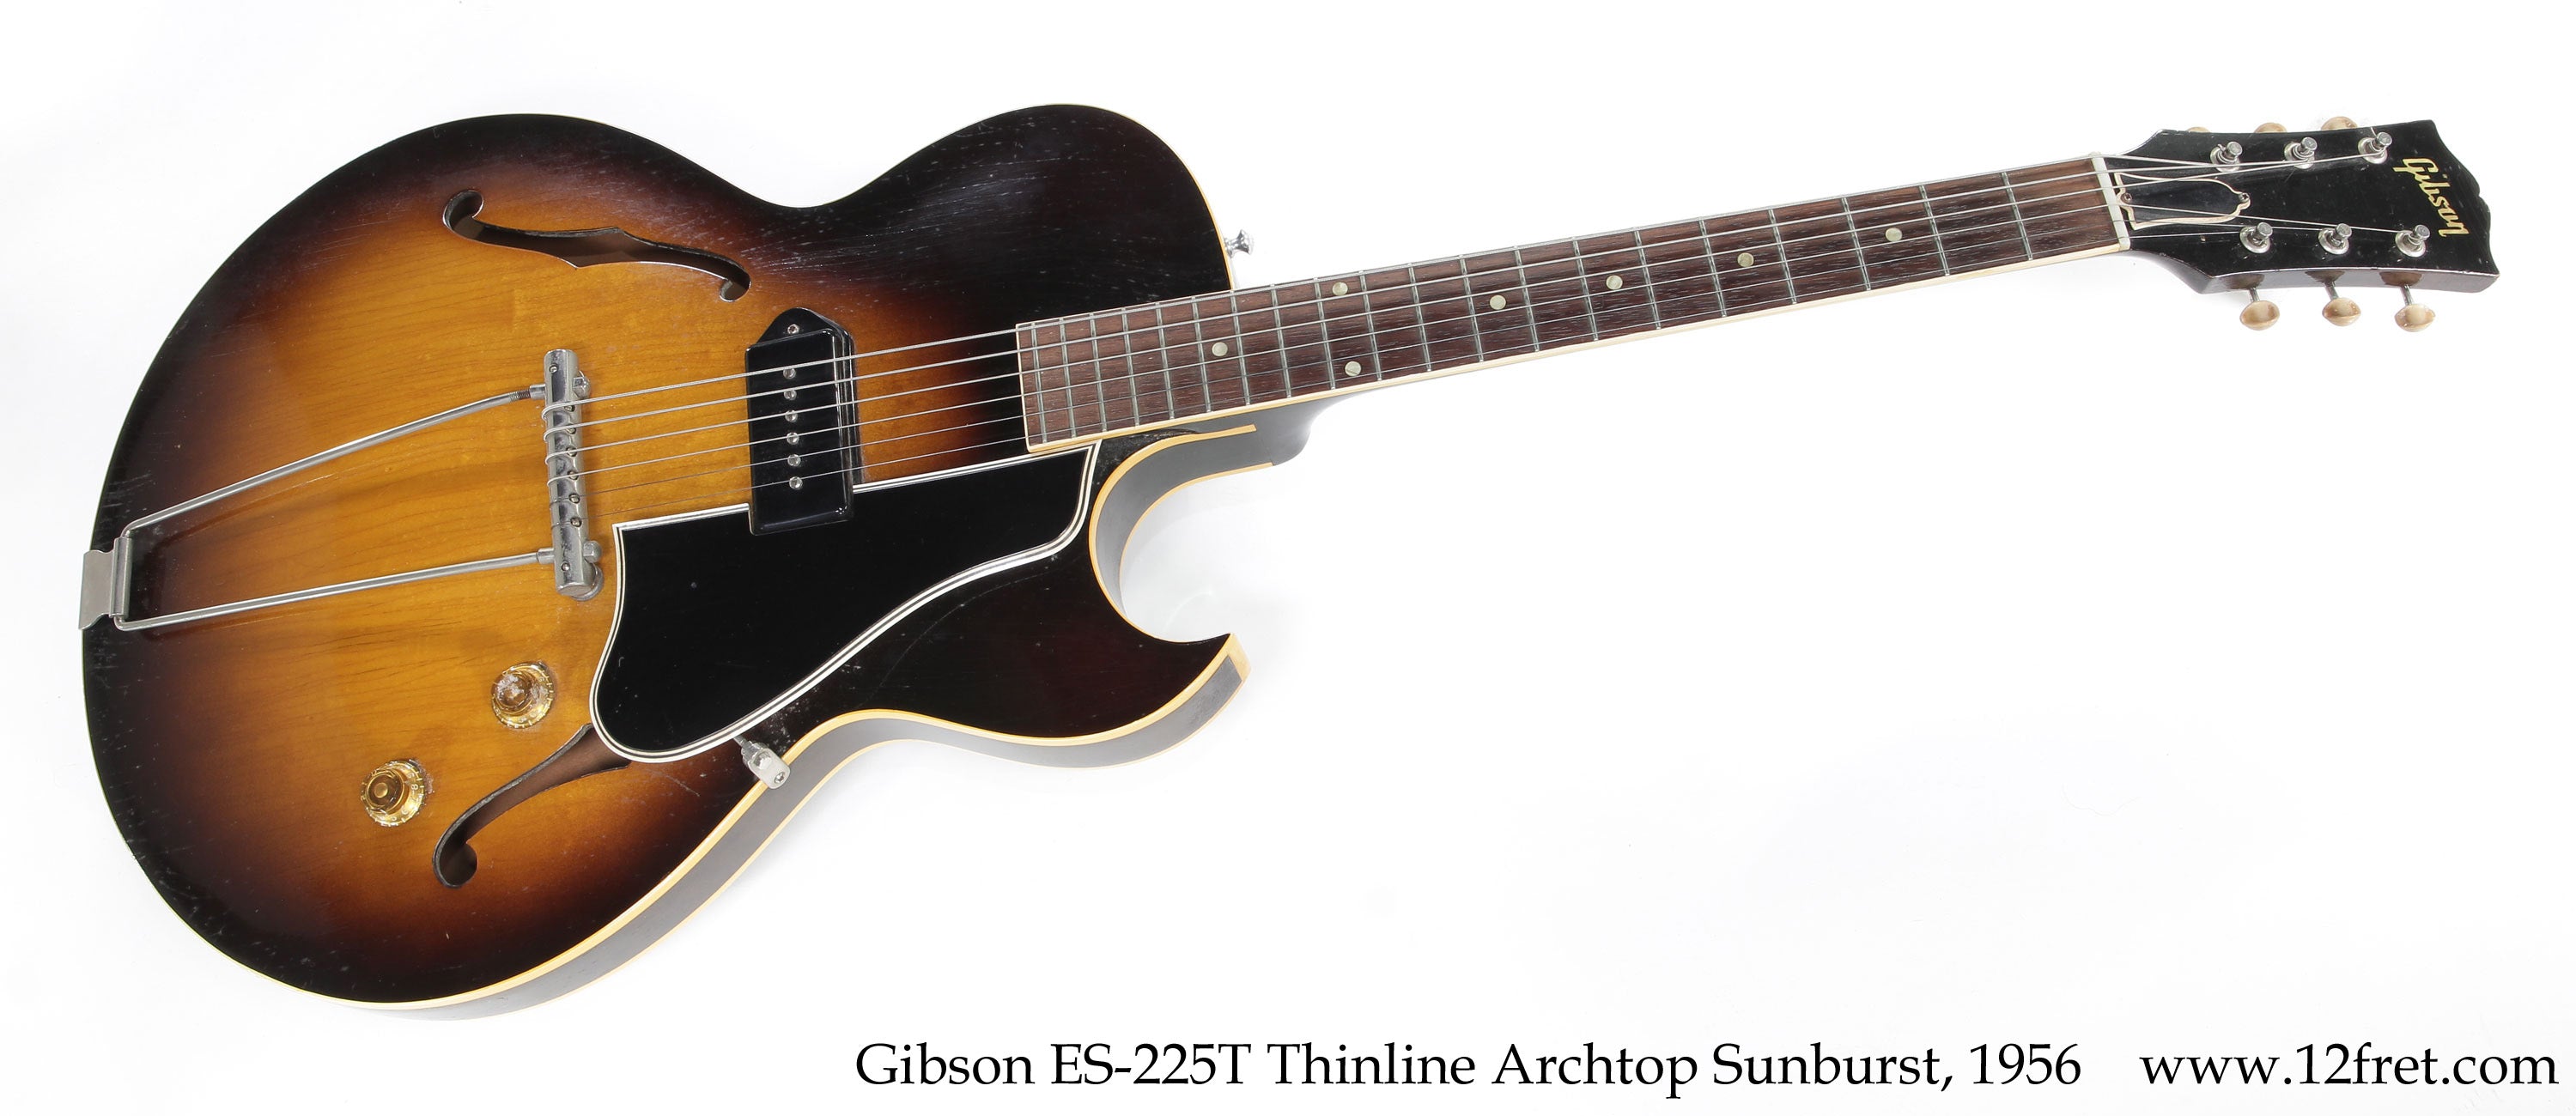 Gibson ES-225T Thinline Archtop Sunburst, 1956  - The Twelfth Fret